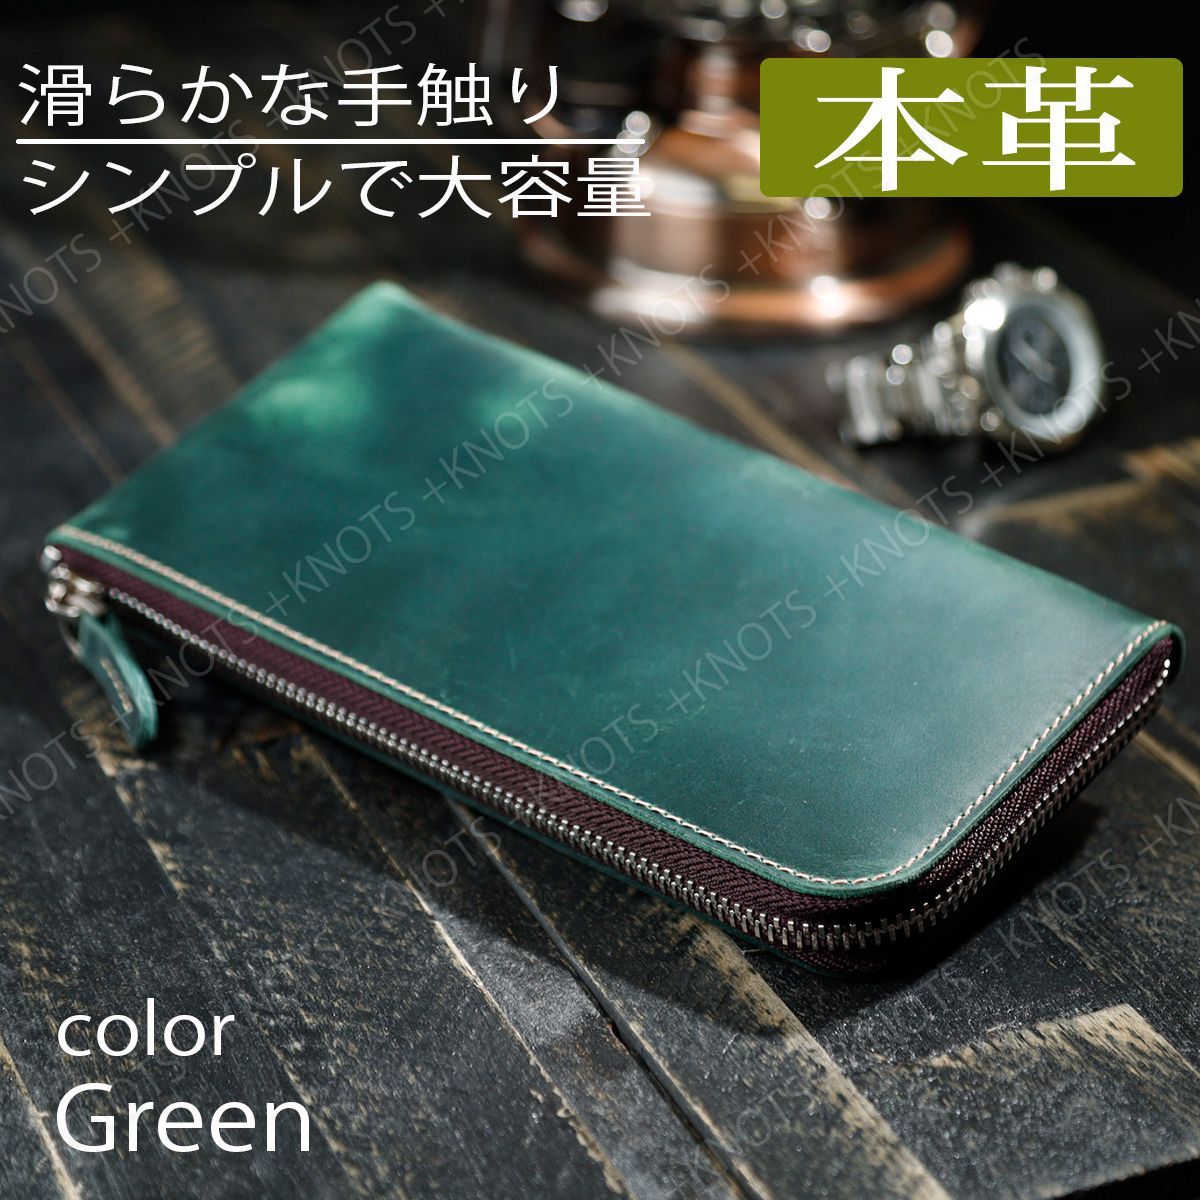 長財布 深緑色 グリーン 薄型